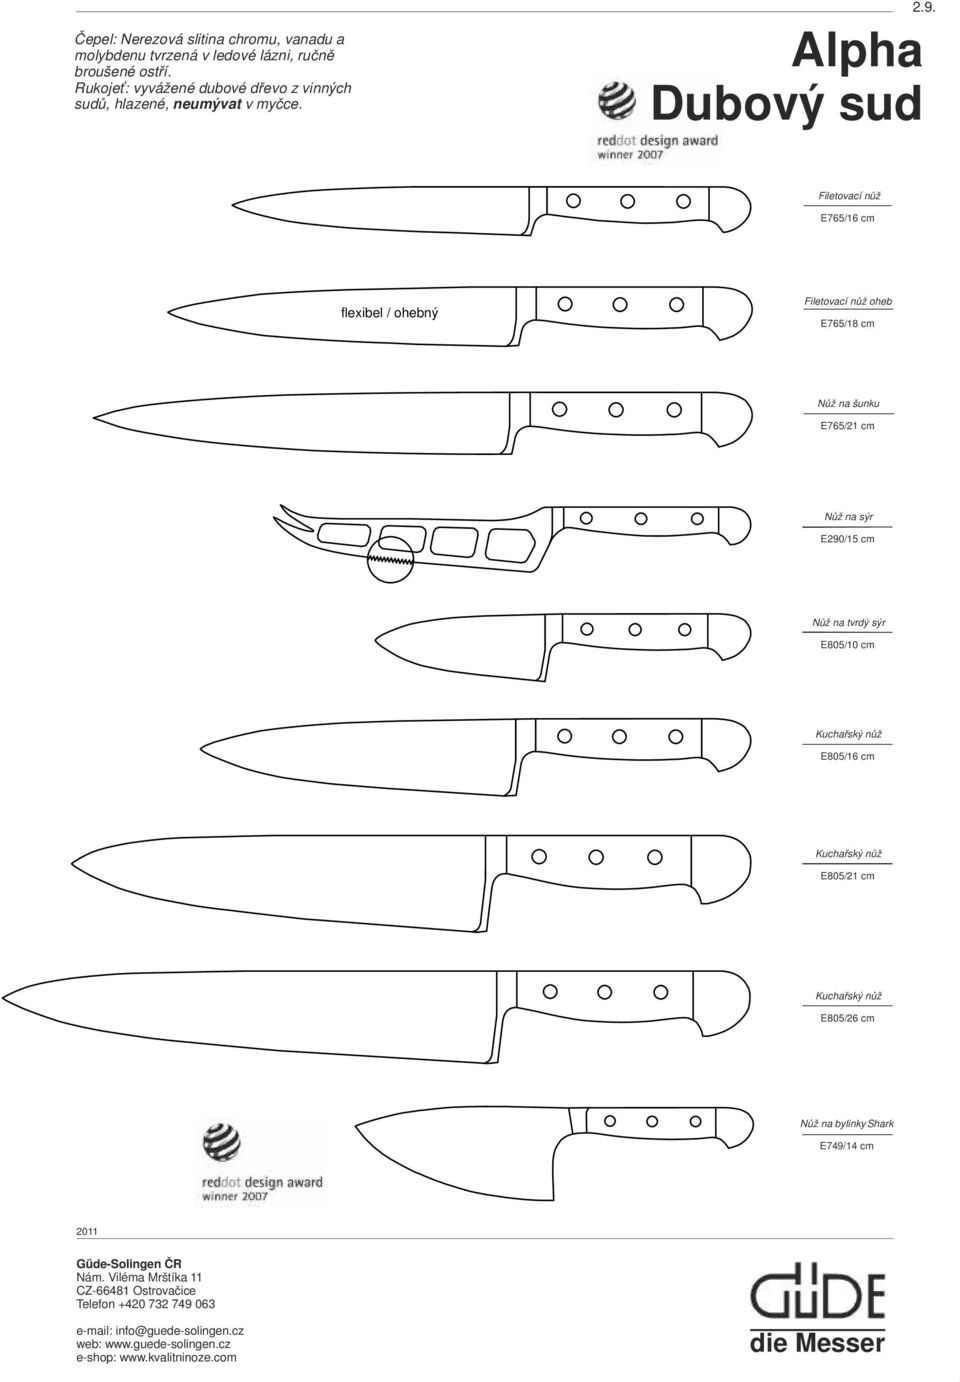 Alpha Dubový sud Filetovací nůž E765/16 cm flexibel / ohebný Filetovací nůž oheb.